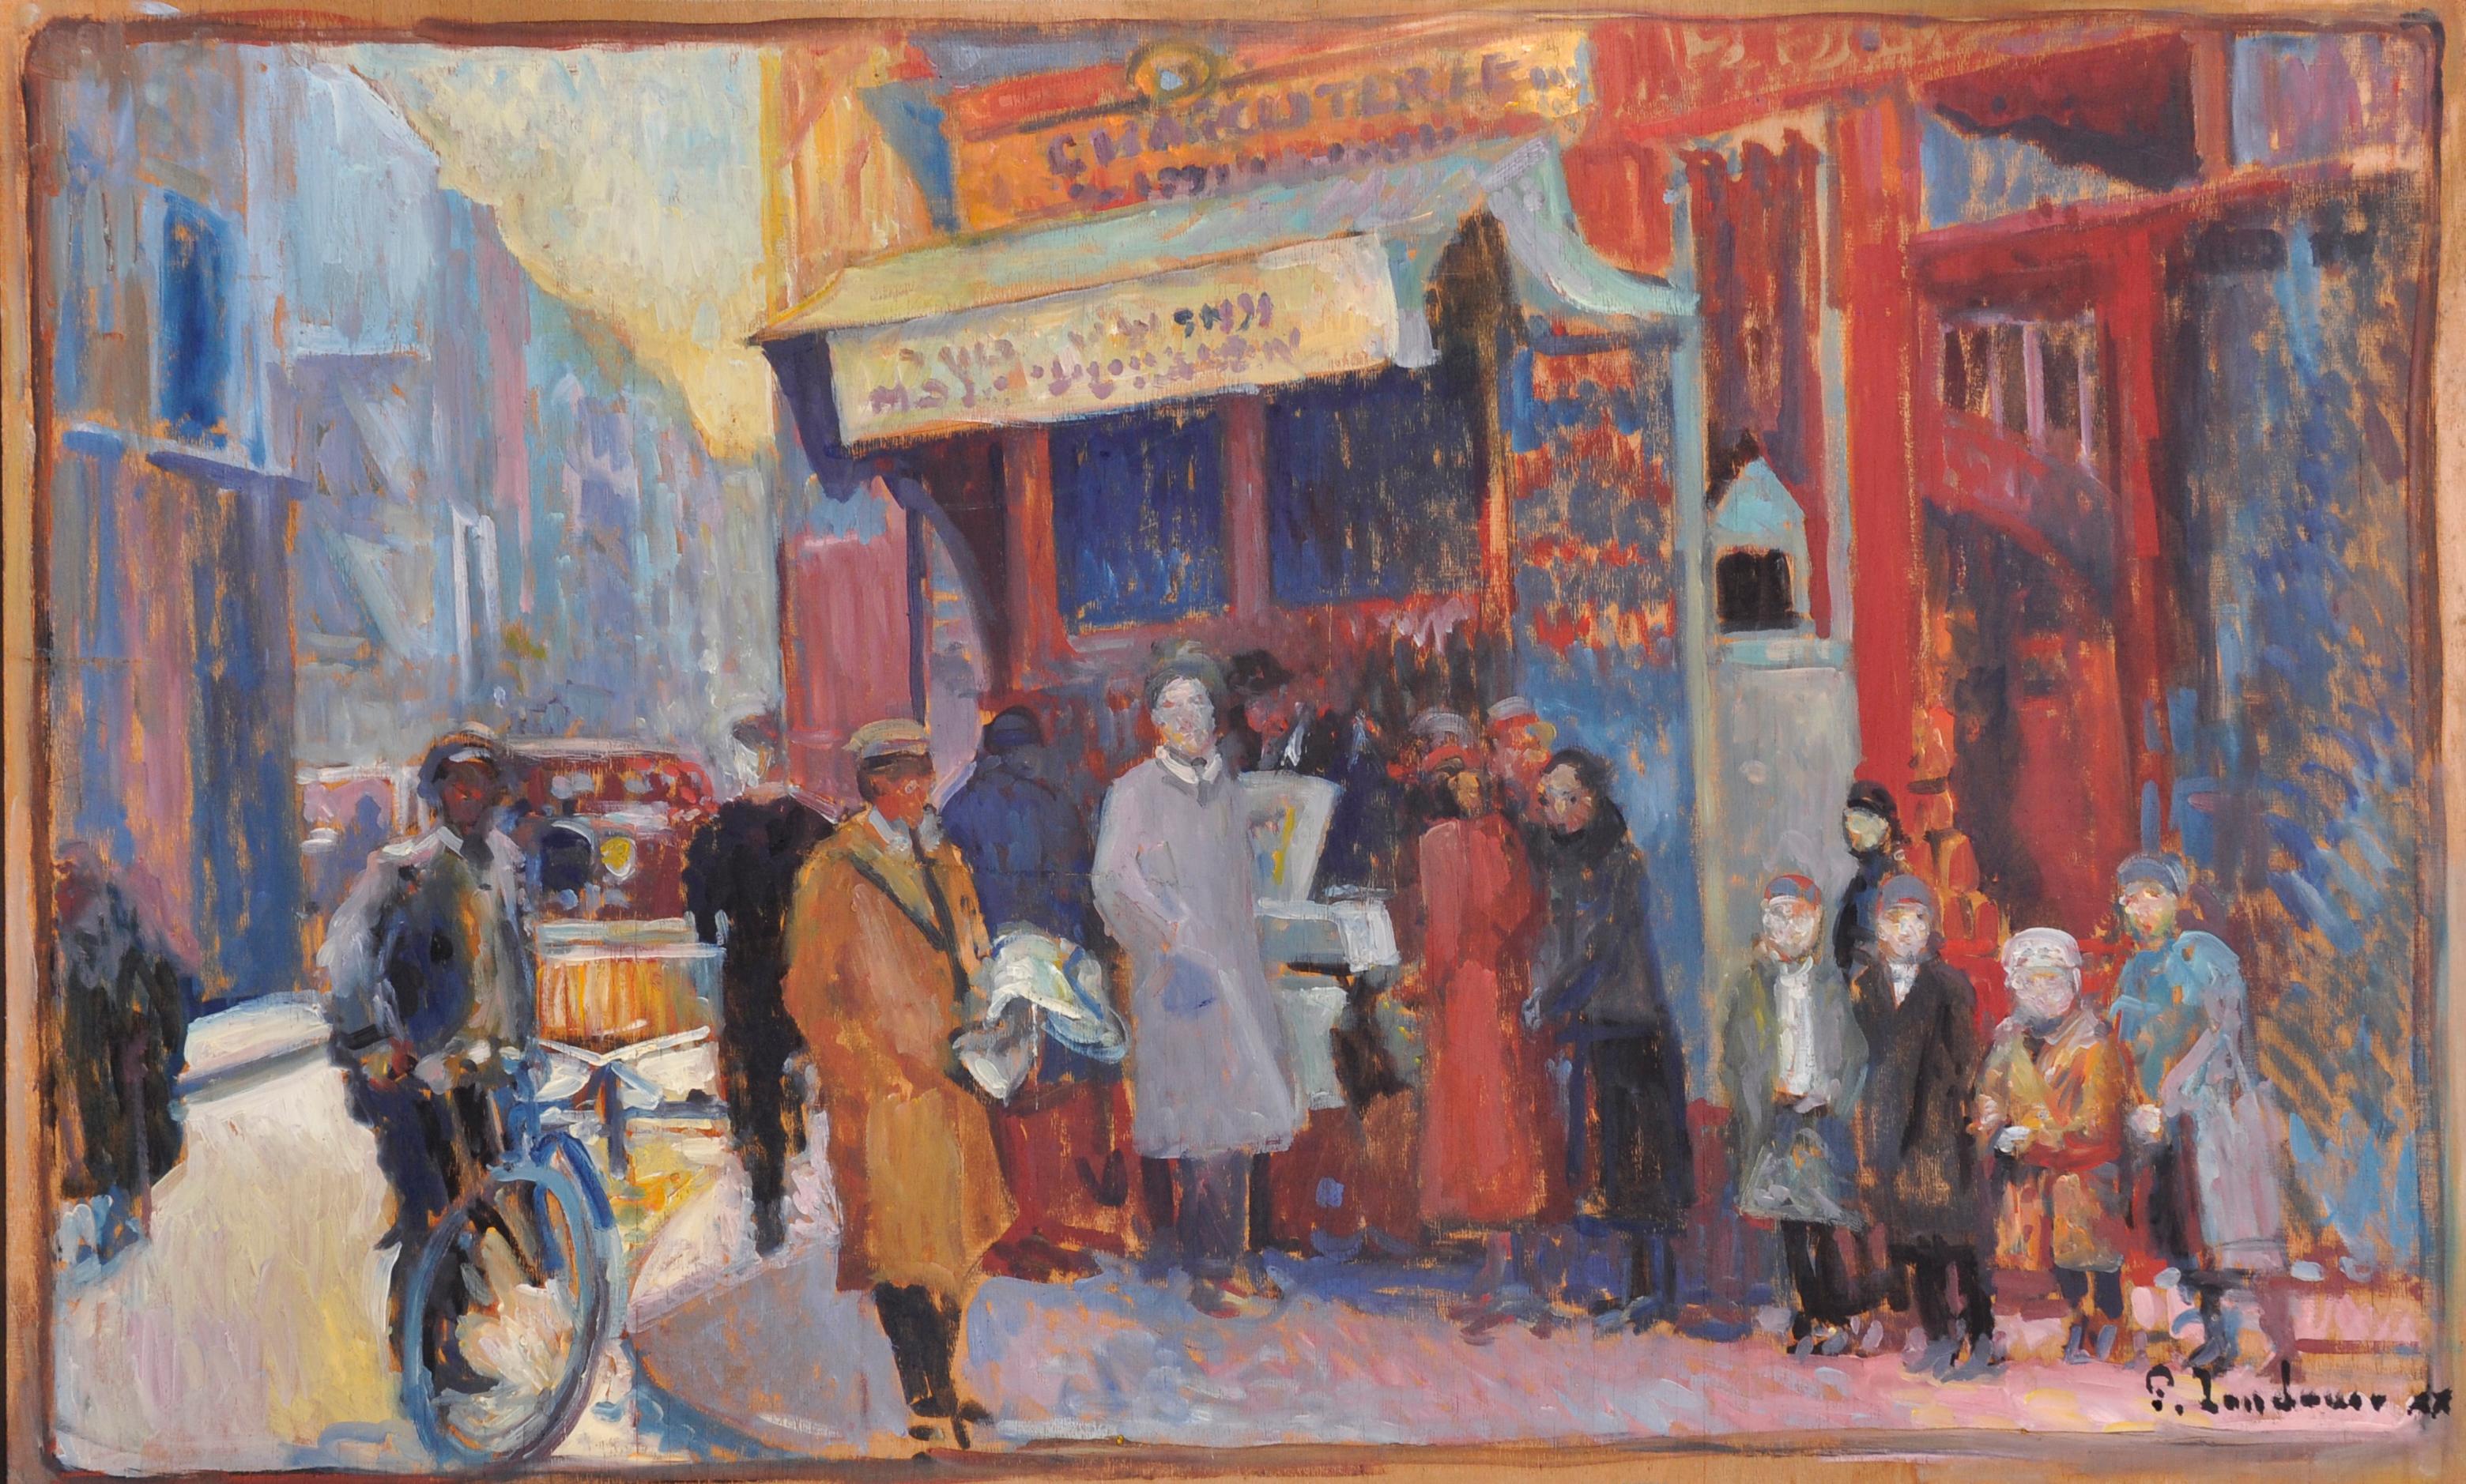 Grande huile impressionniste française signée - scène vintage d'une rue parisienne animée - Painting de Patrice Landauer